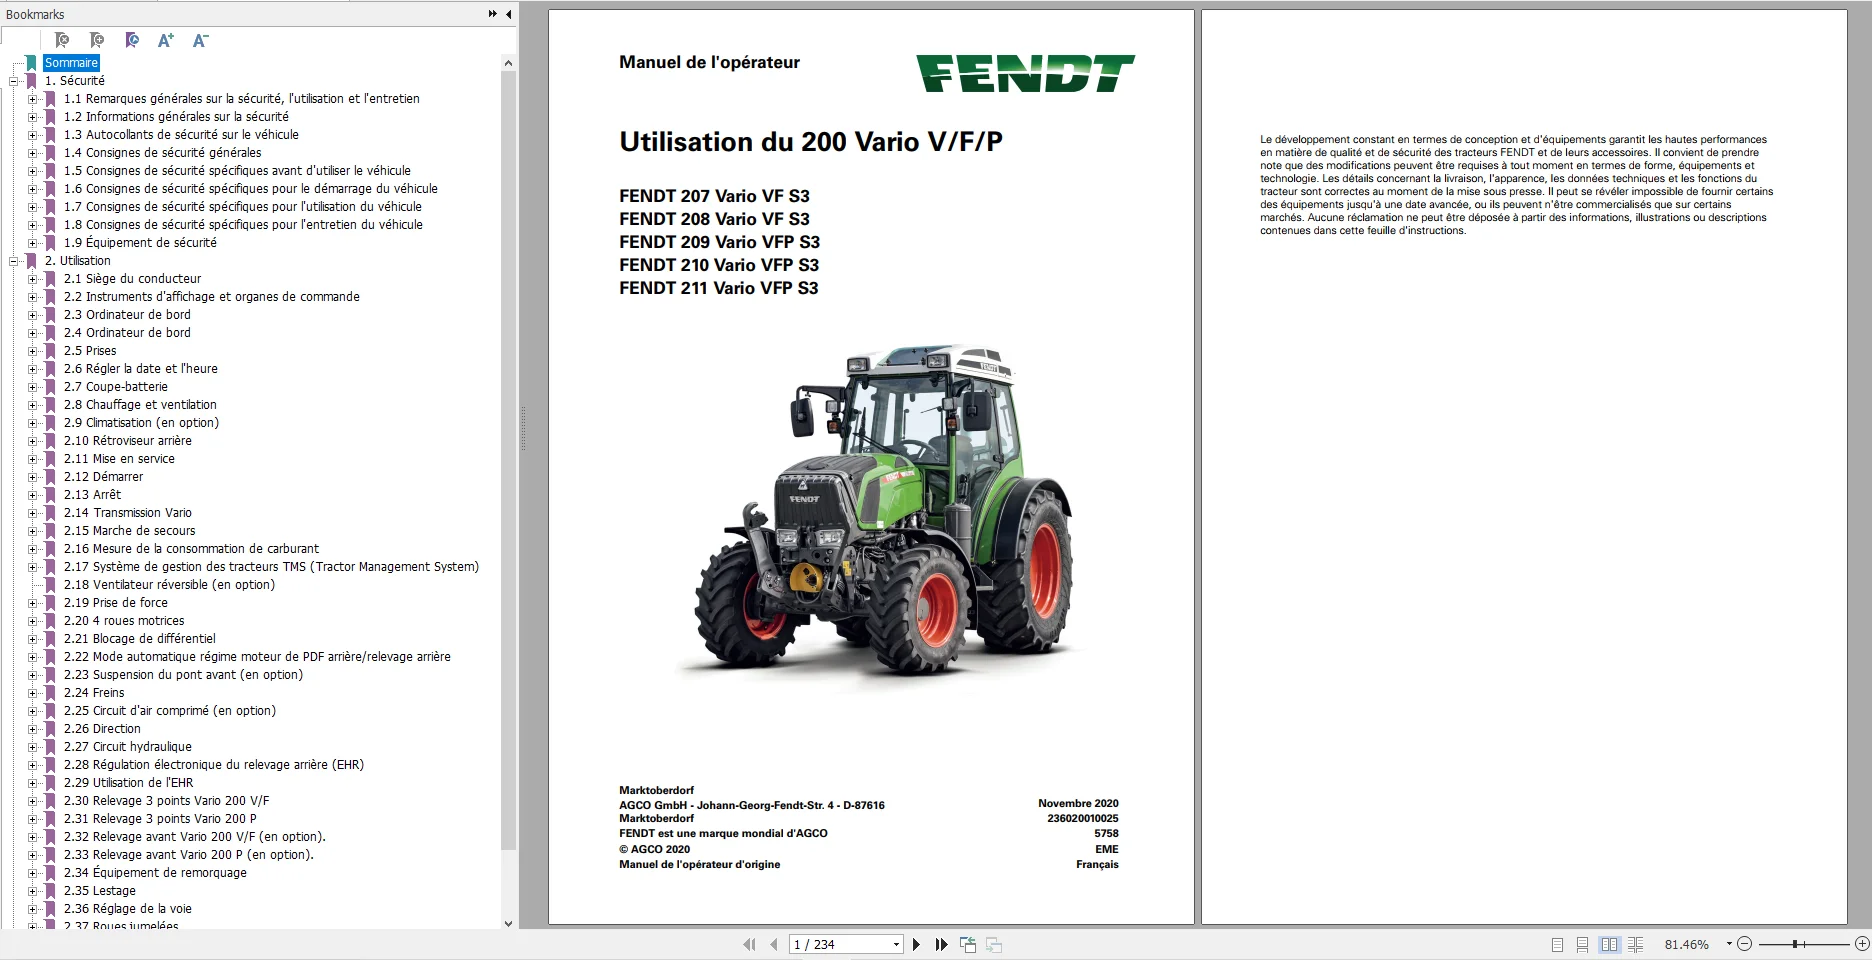 

PDF-схемы для трактора FENDT 20,2, руководства оператора и мастерской, DVD French _ fr